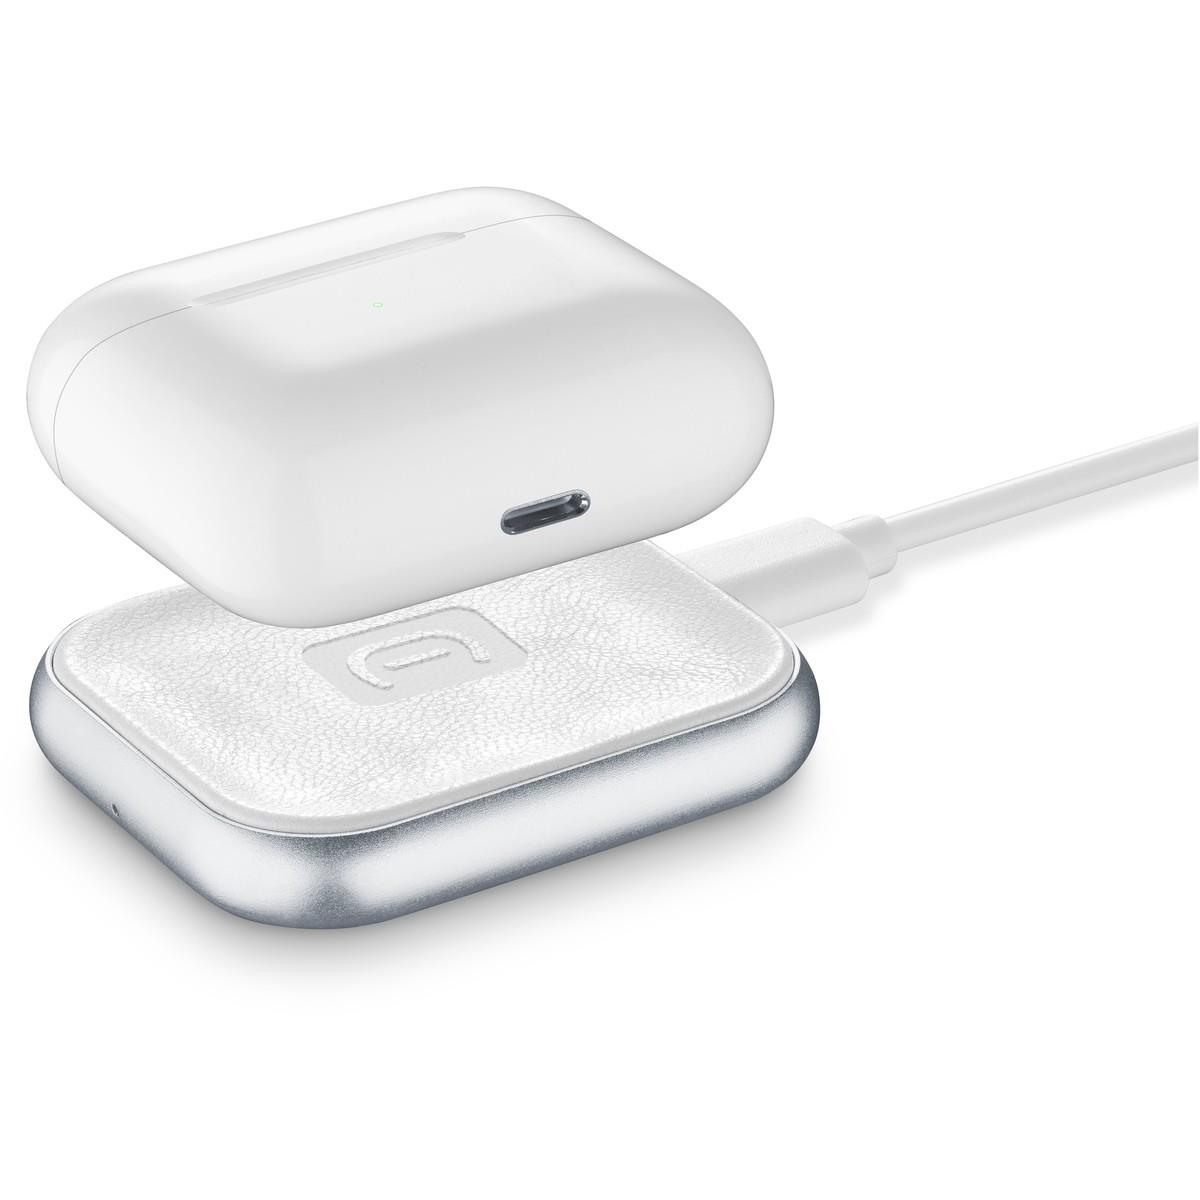 Wireless Charger POWER BASE für Apple AirPods 2/3 und AirPods Pro